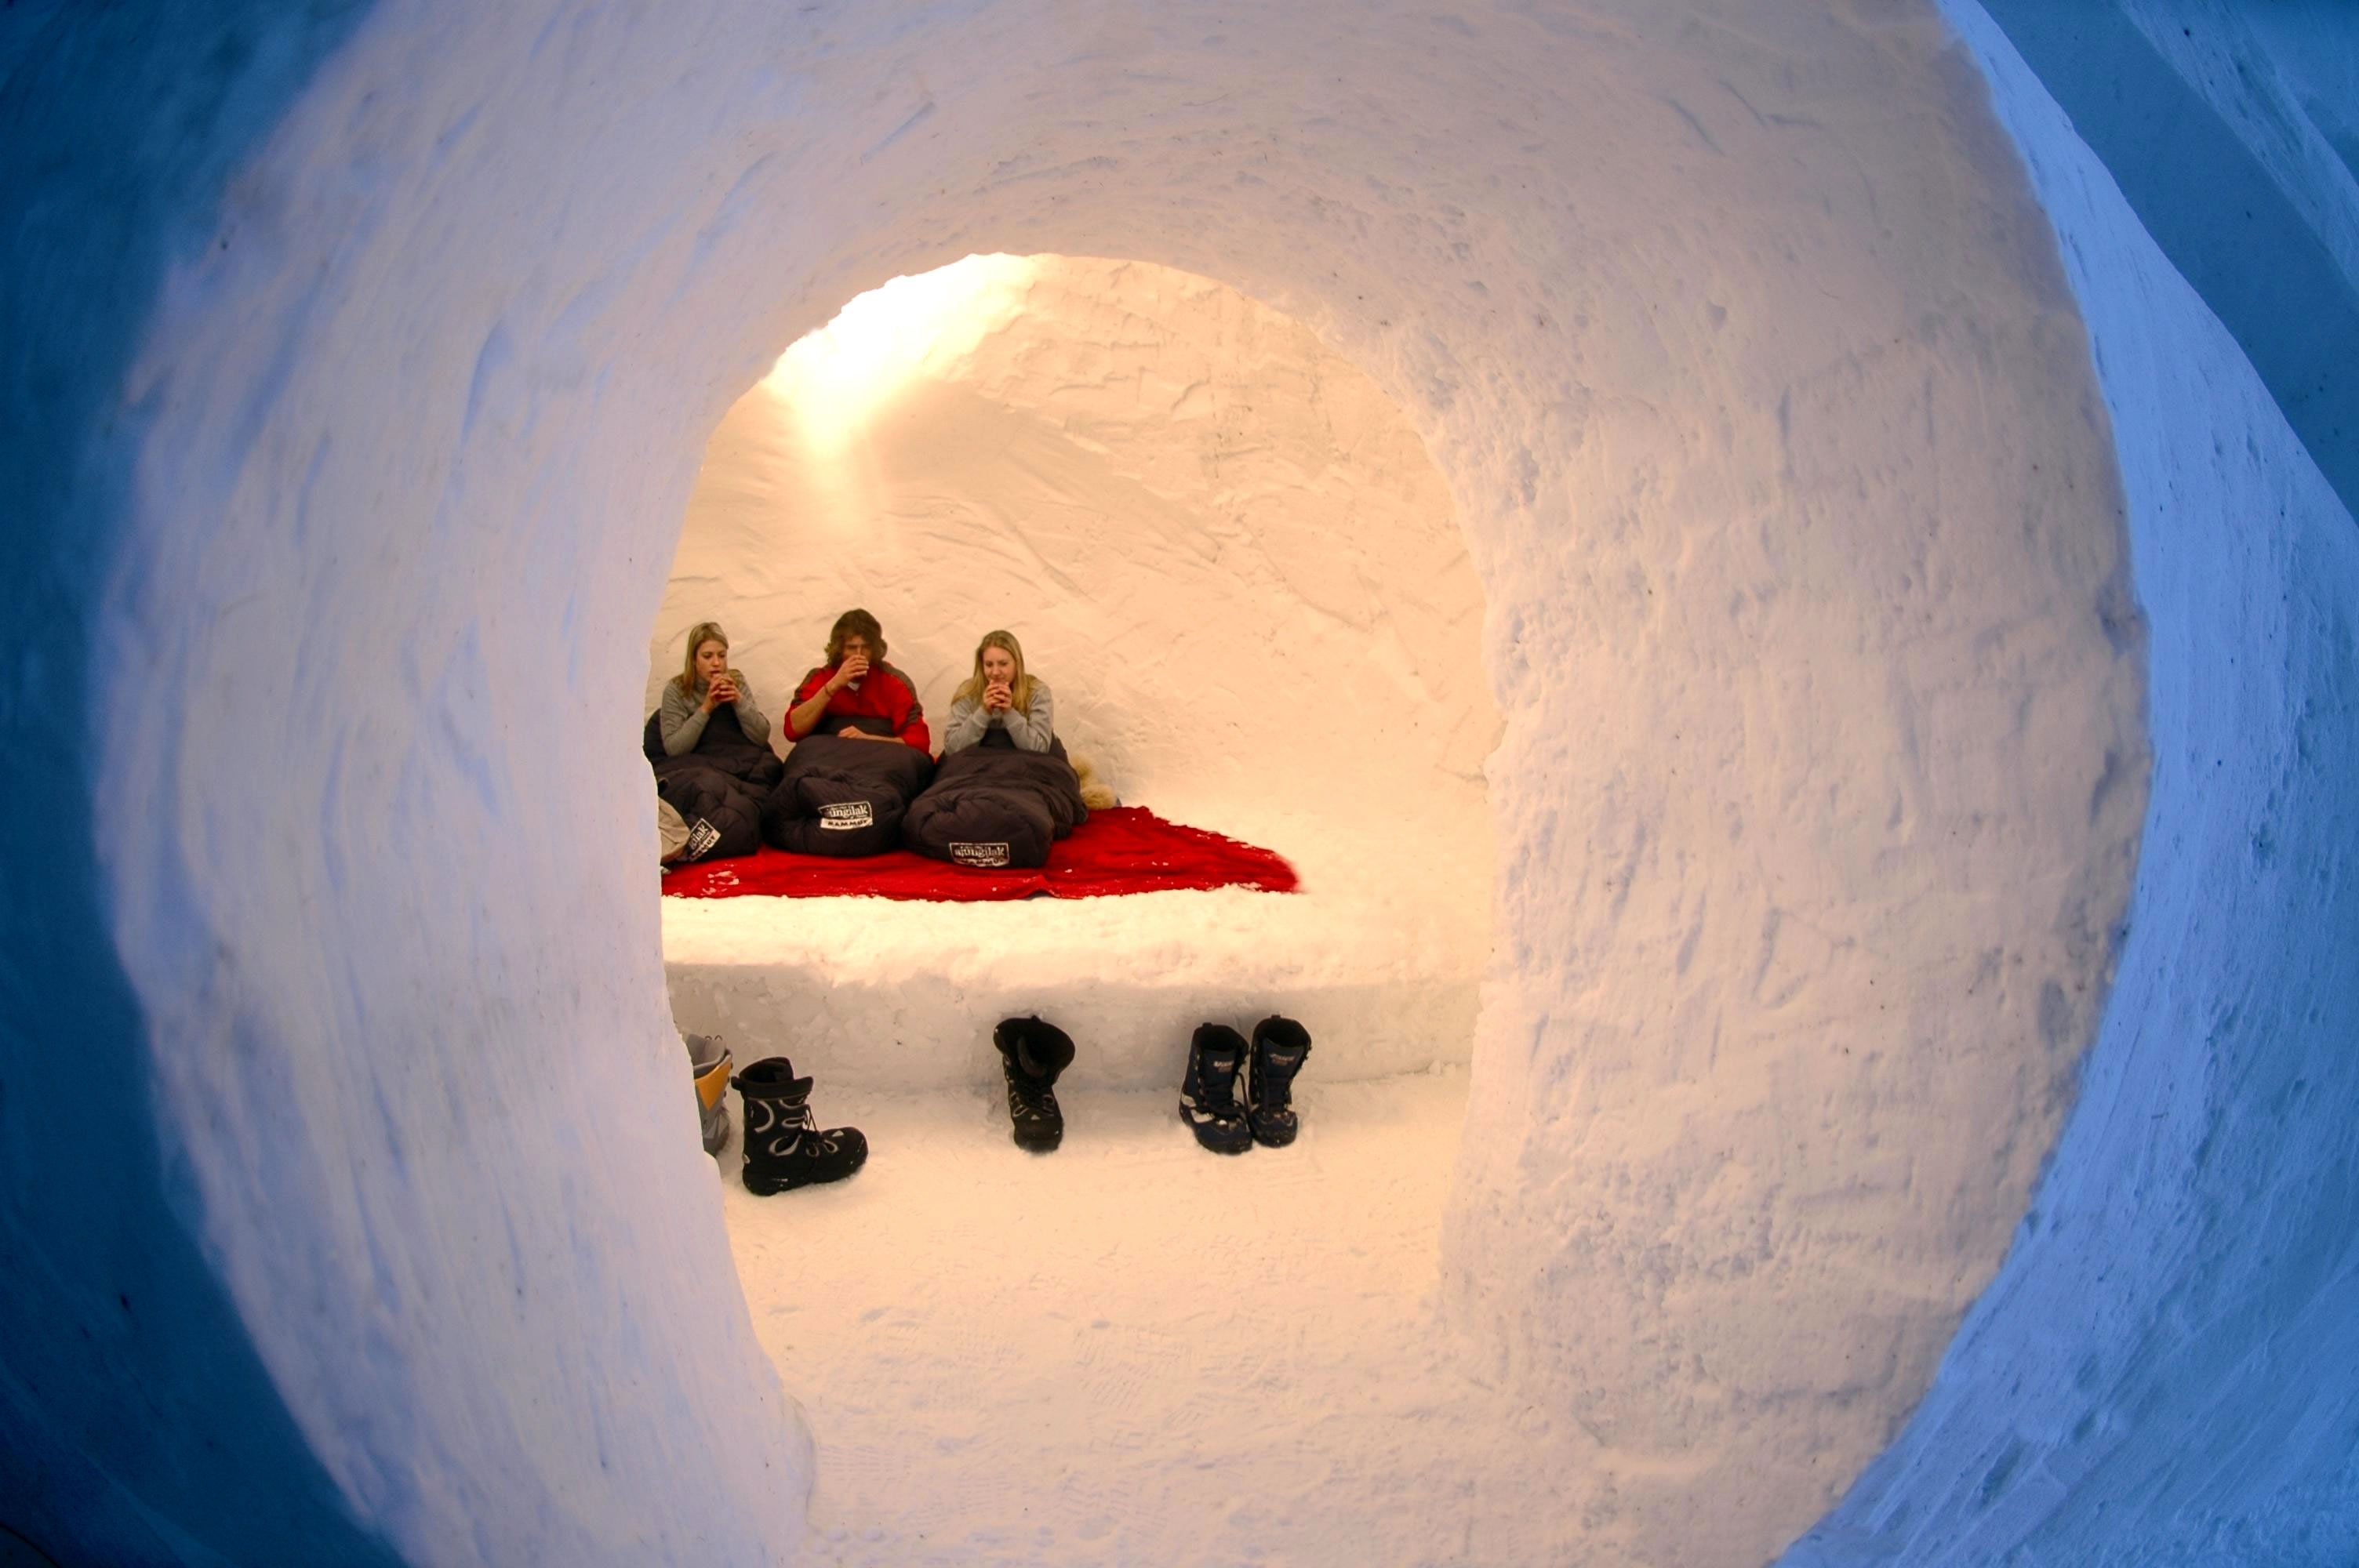 Иглу тепло. Иглу - снежный дом эскимосов. Иглу домик эскимоса. Иглу-отель «Горная территория», Камчатка). Иглу жилище эскимосов изнутри.